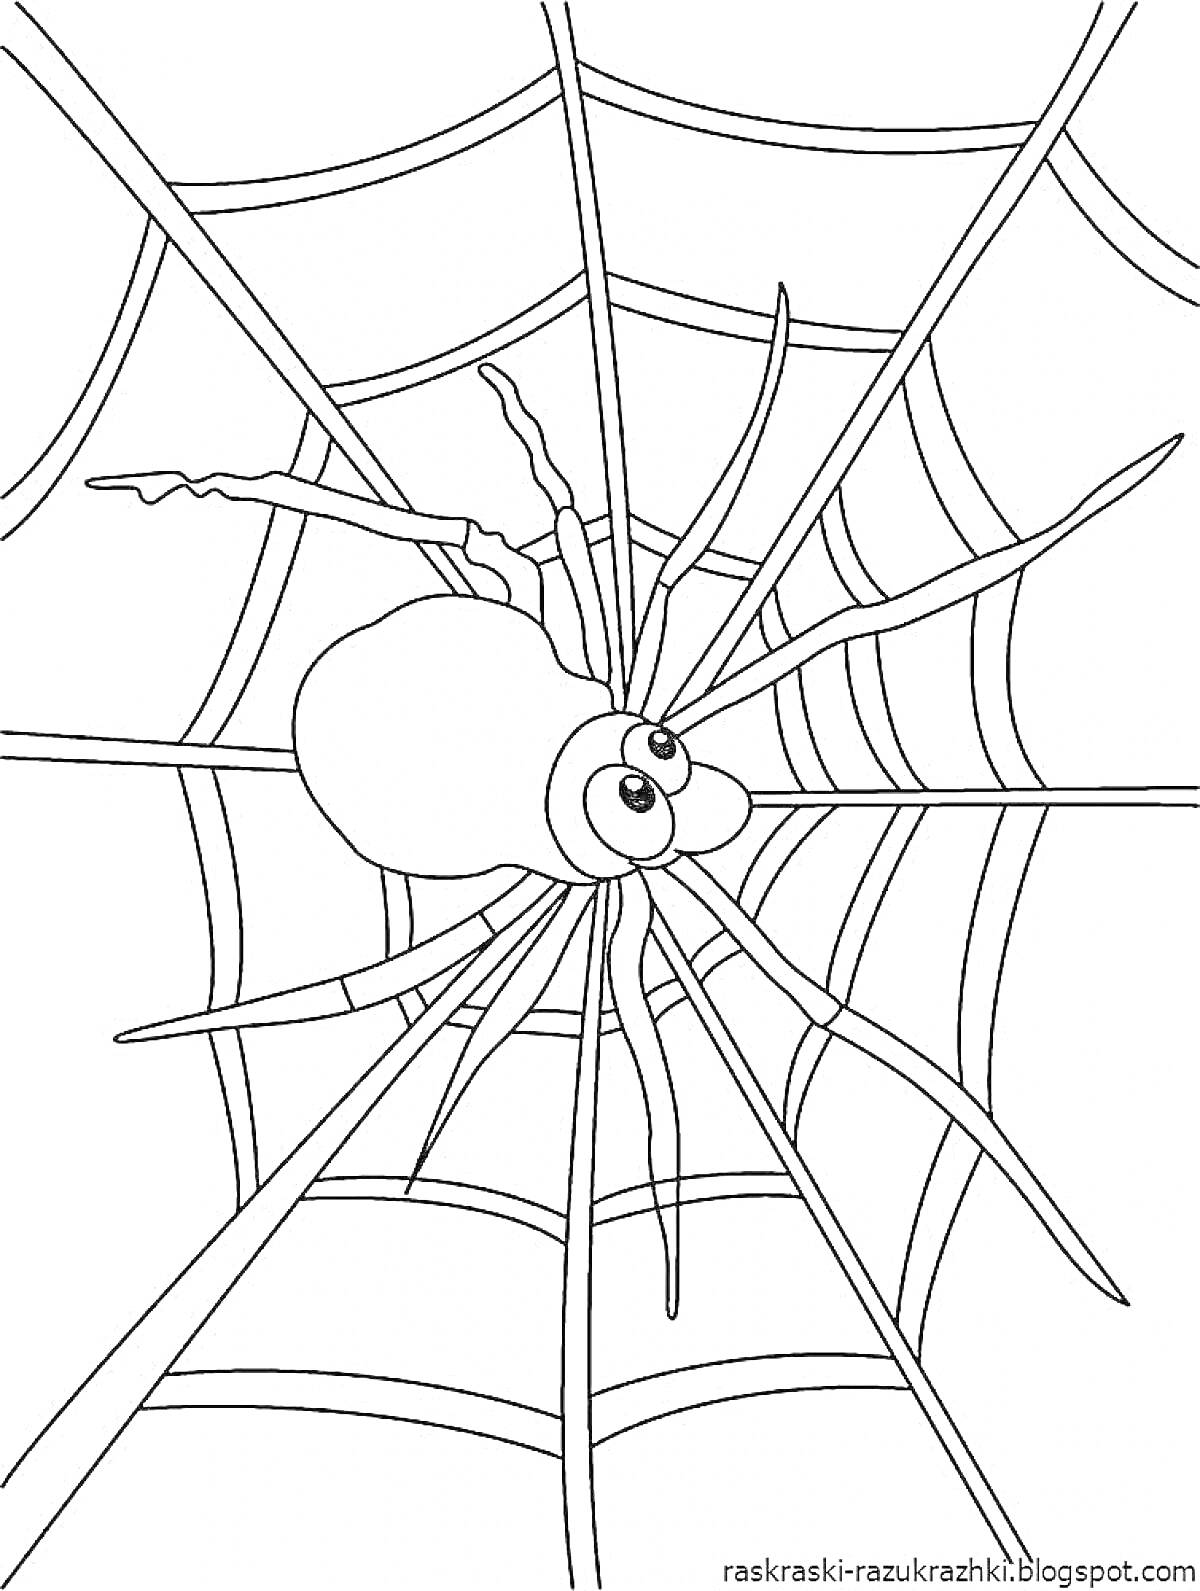 Раскраска Паук на паутине с большими глазами.